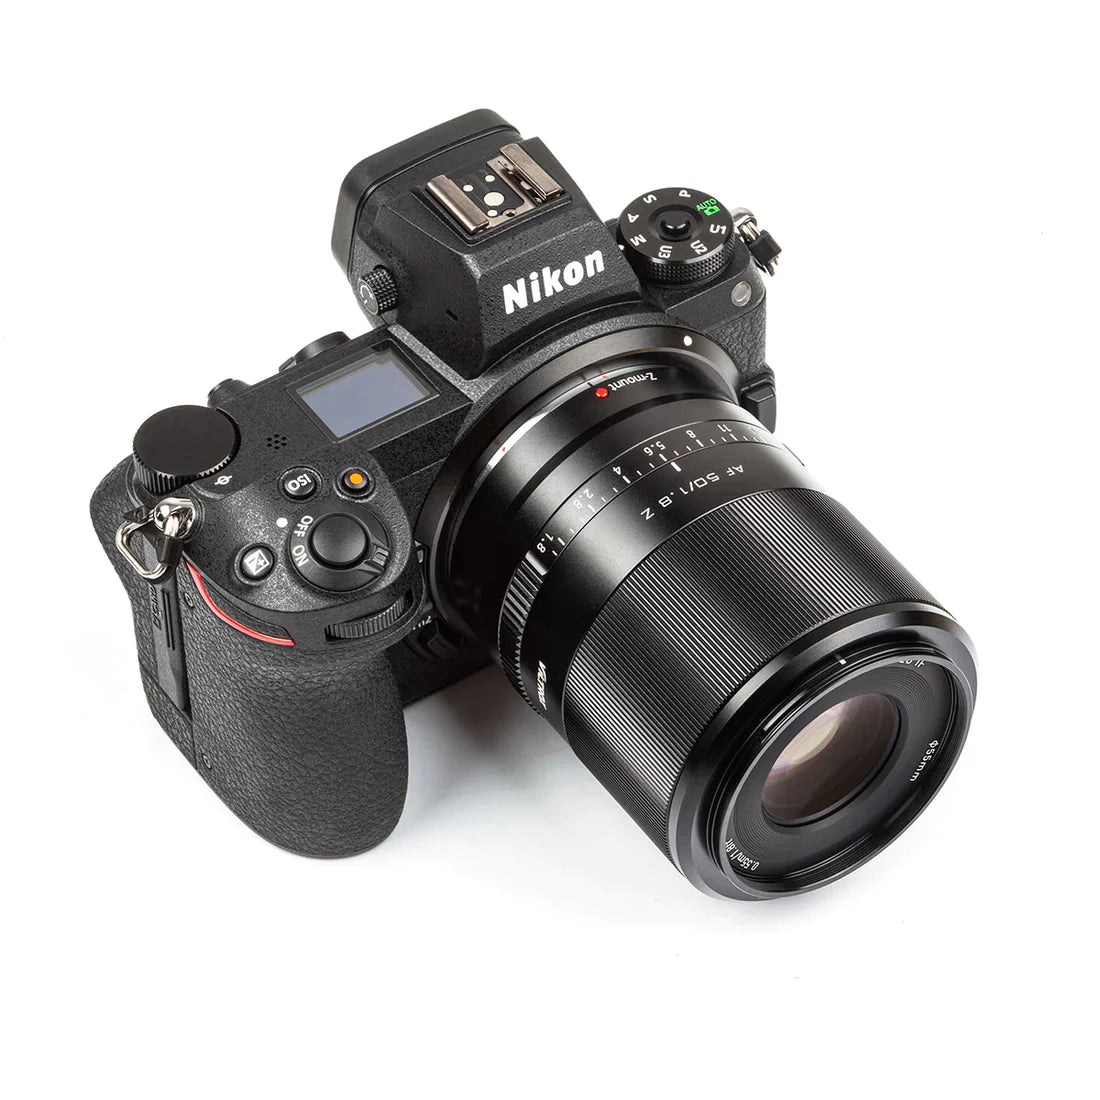 Viltrox AF 50mm F1.8 Full Frame Lens for Nikon Z Mirrorless Camera - Vitopal